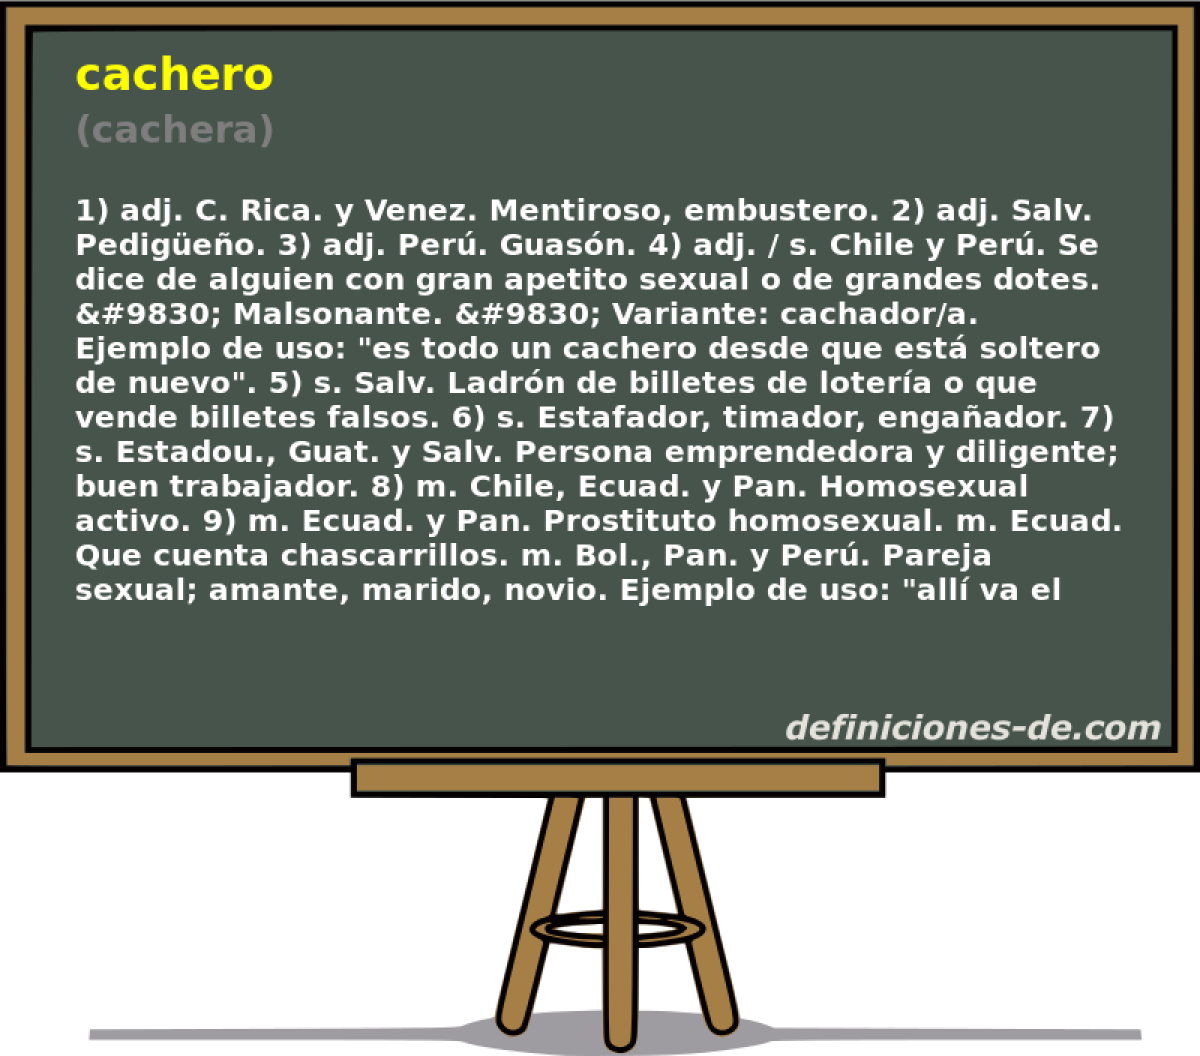 cachero (cachera)